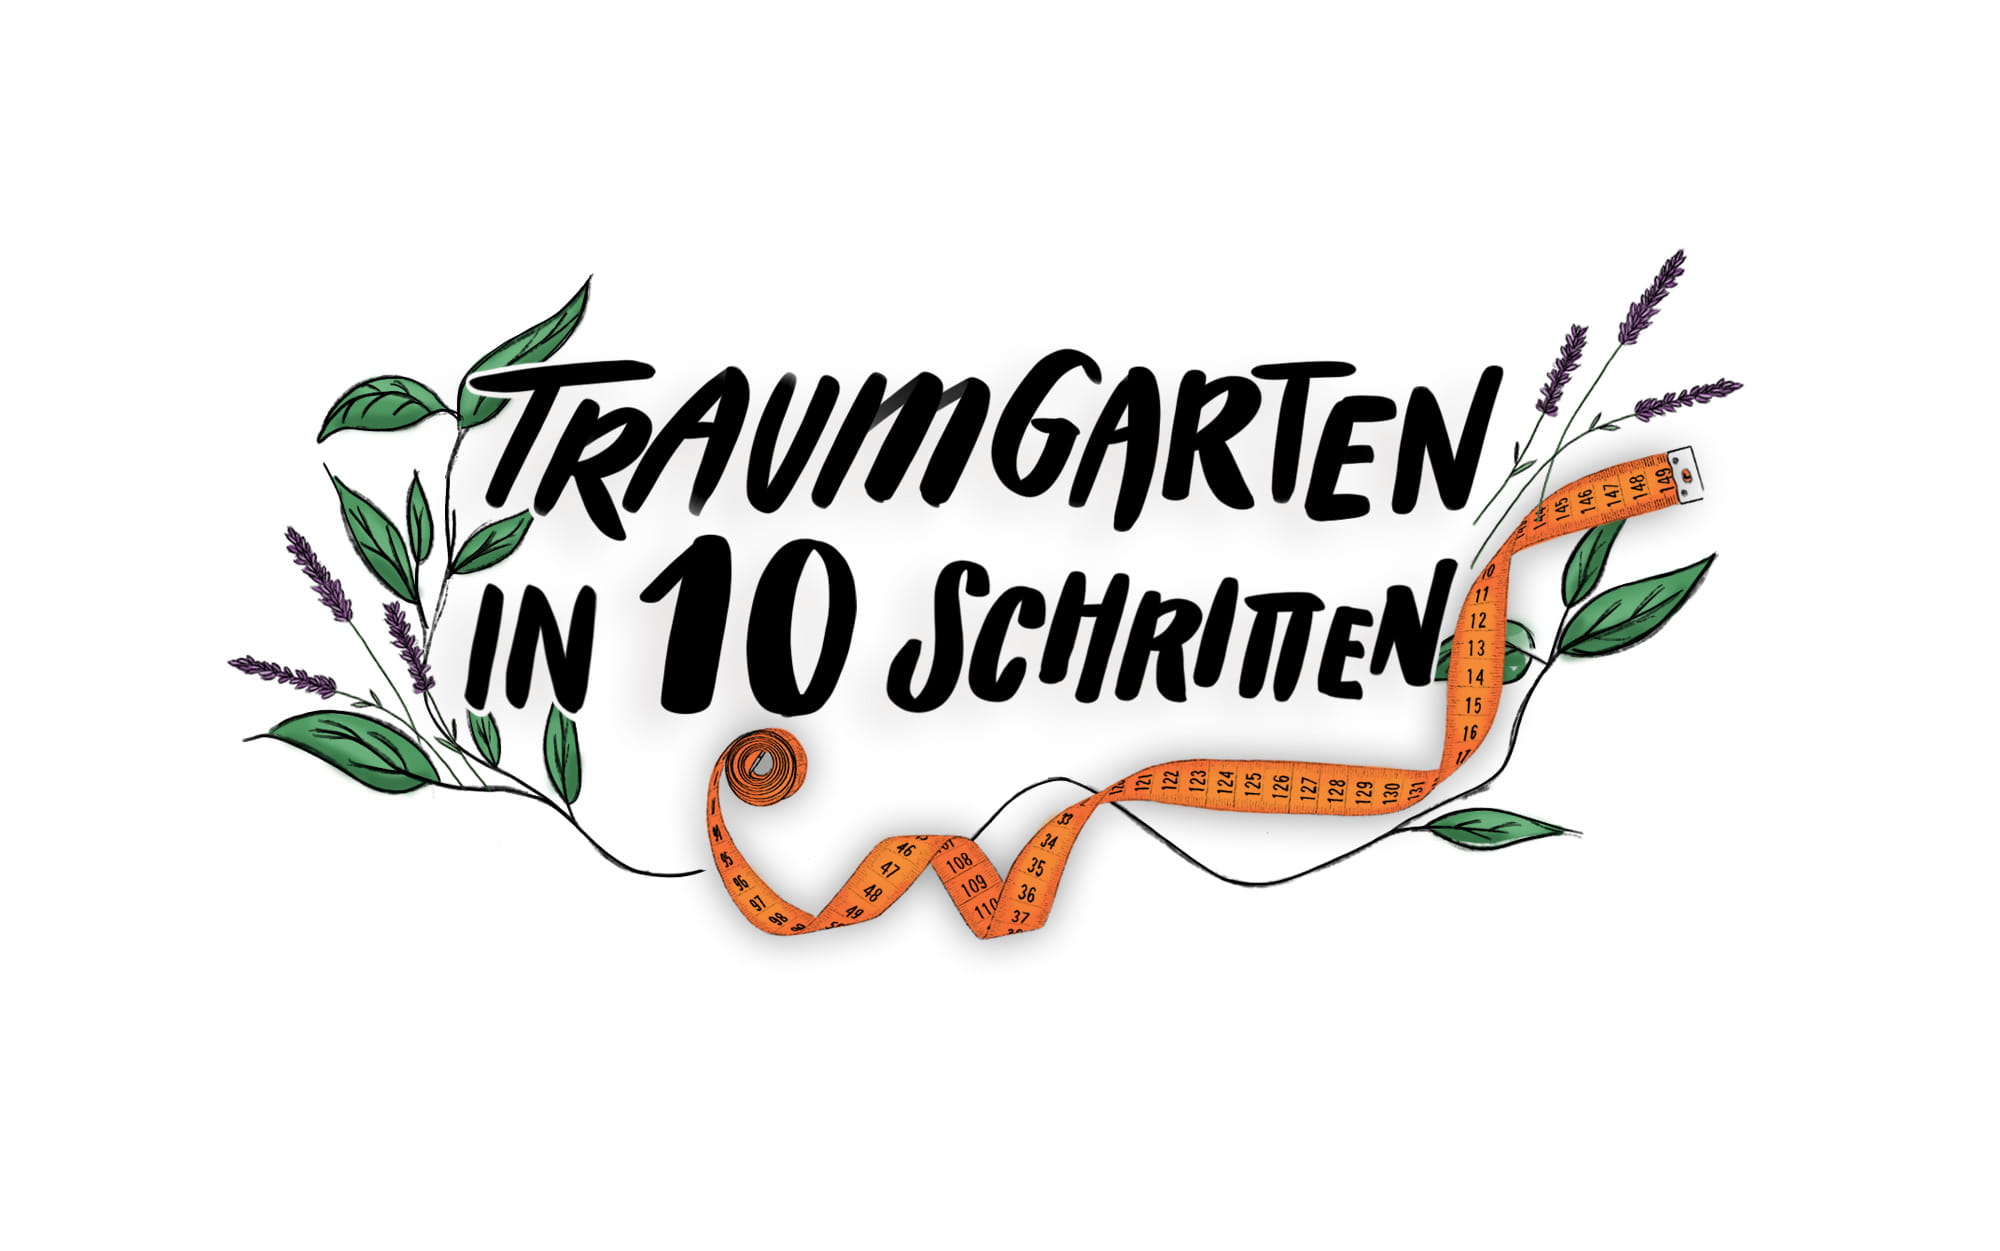 Traumgarten in 10 Schritten